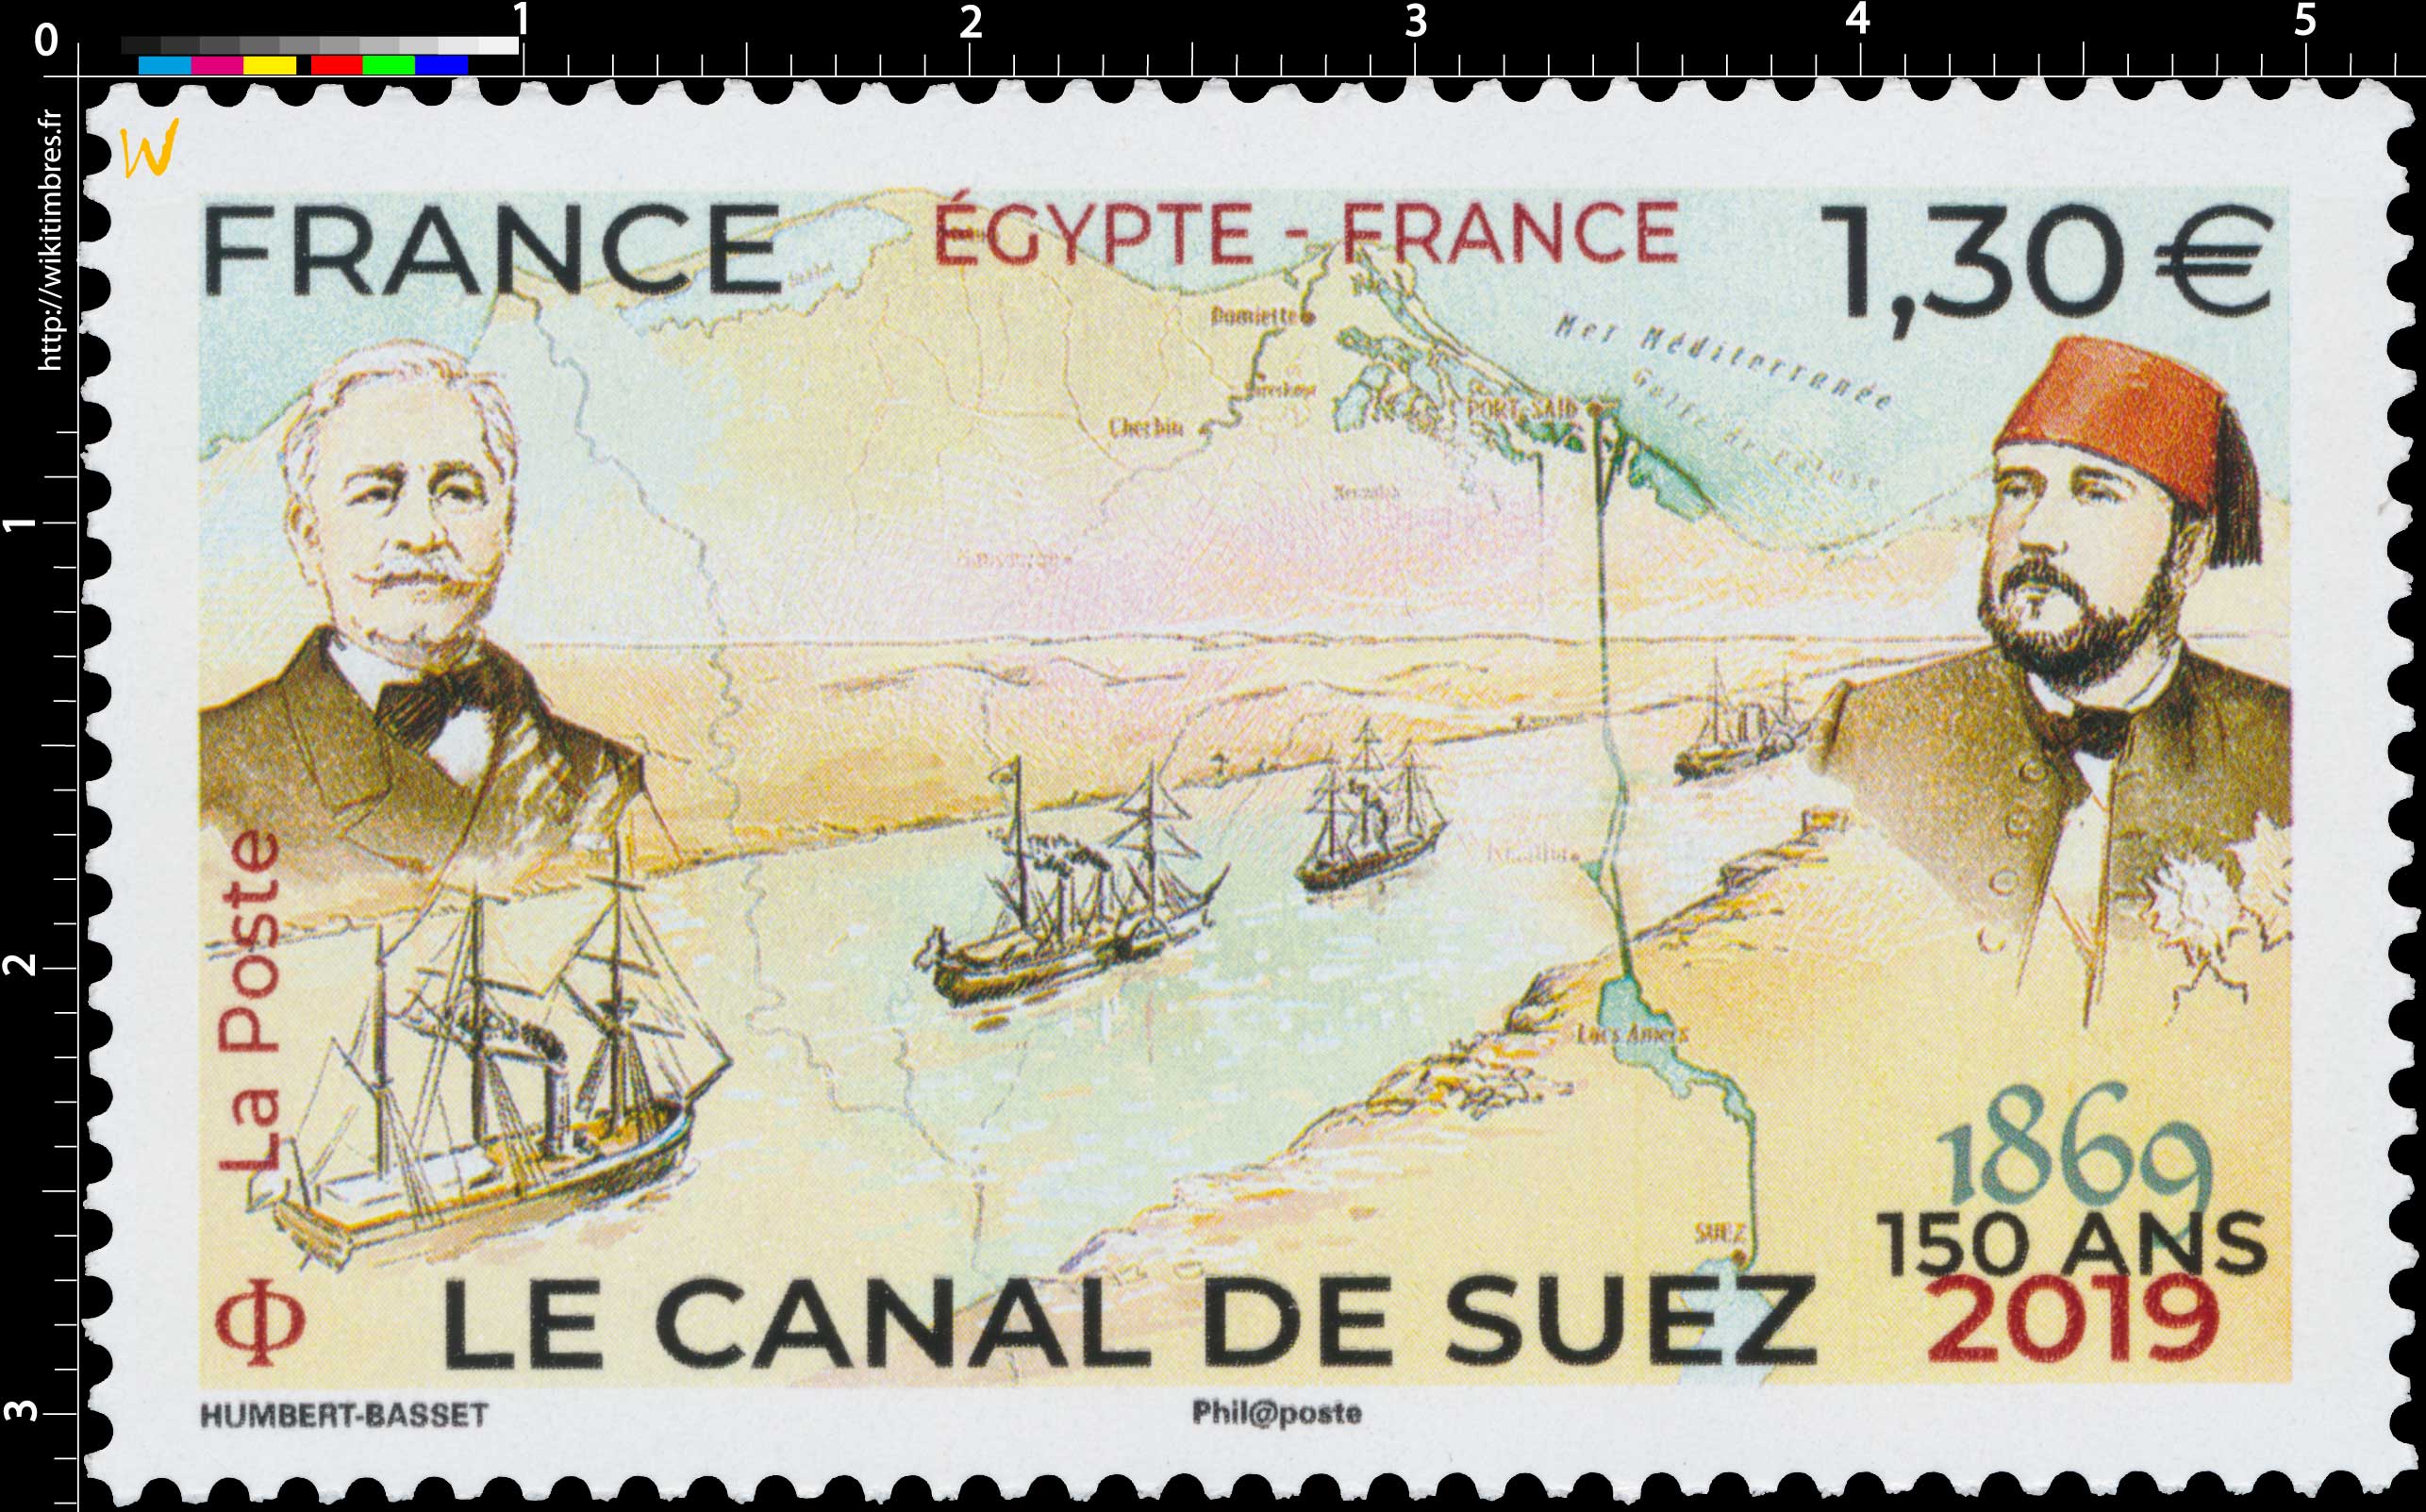 2019 ÉGYPTE-FRANCE LE CANAL DE SUEZ 150 ANS 1869-2019